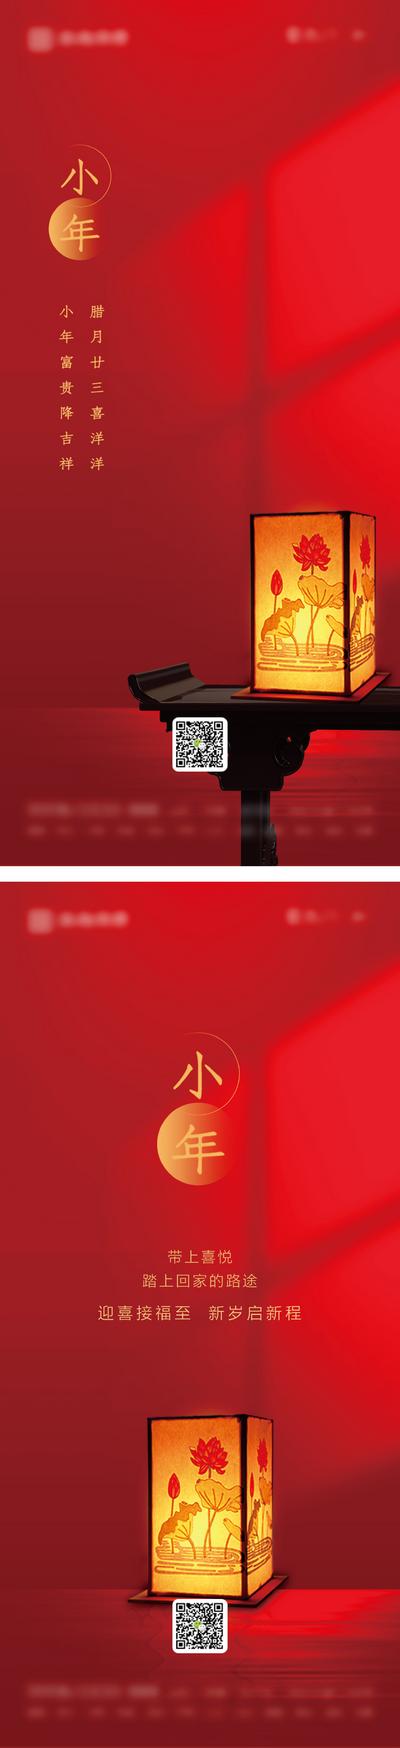 南门网 海报 小年 中国传统节日 灯笼 系列